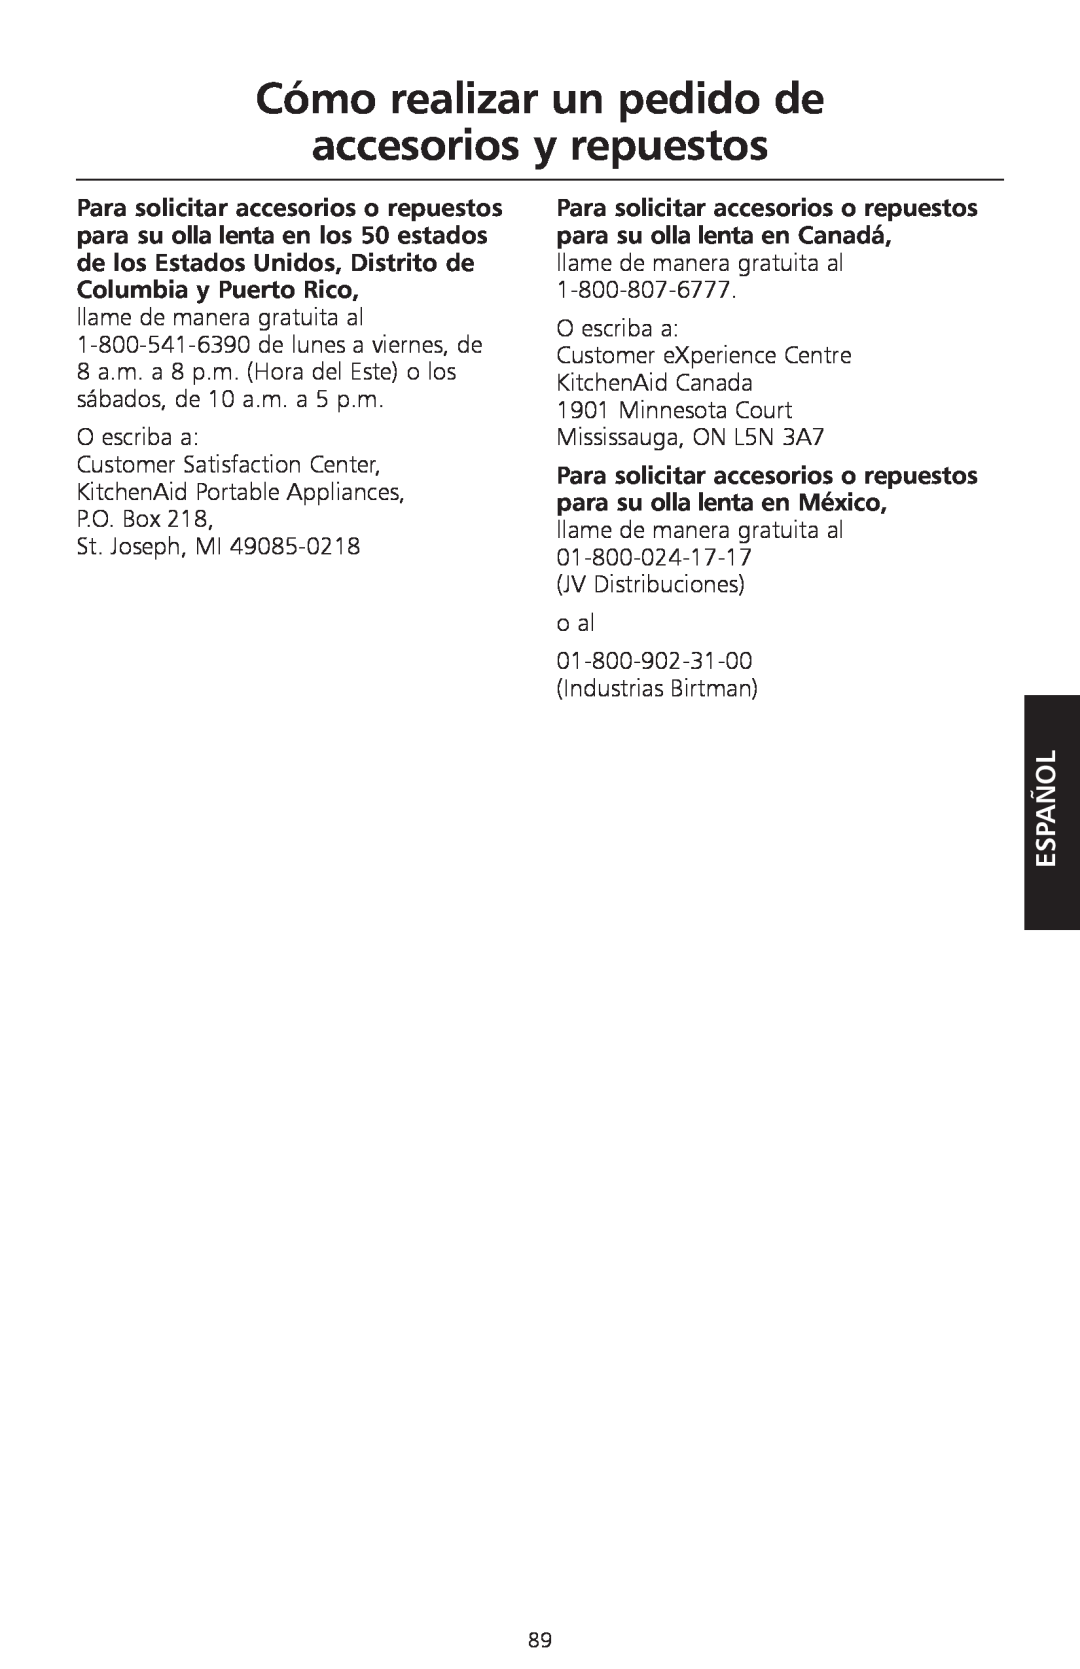 KitchenAid KSC700 manual Cómo realizar un pedido de accesorios y repuestos, Español, Para solicitar accesorios o repuestos 